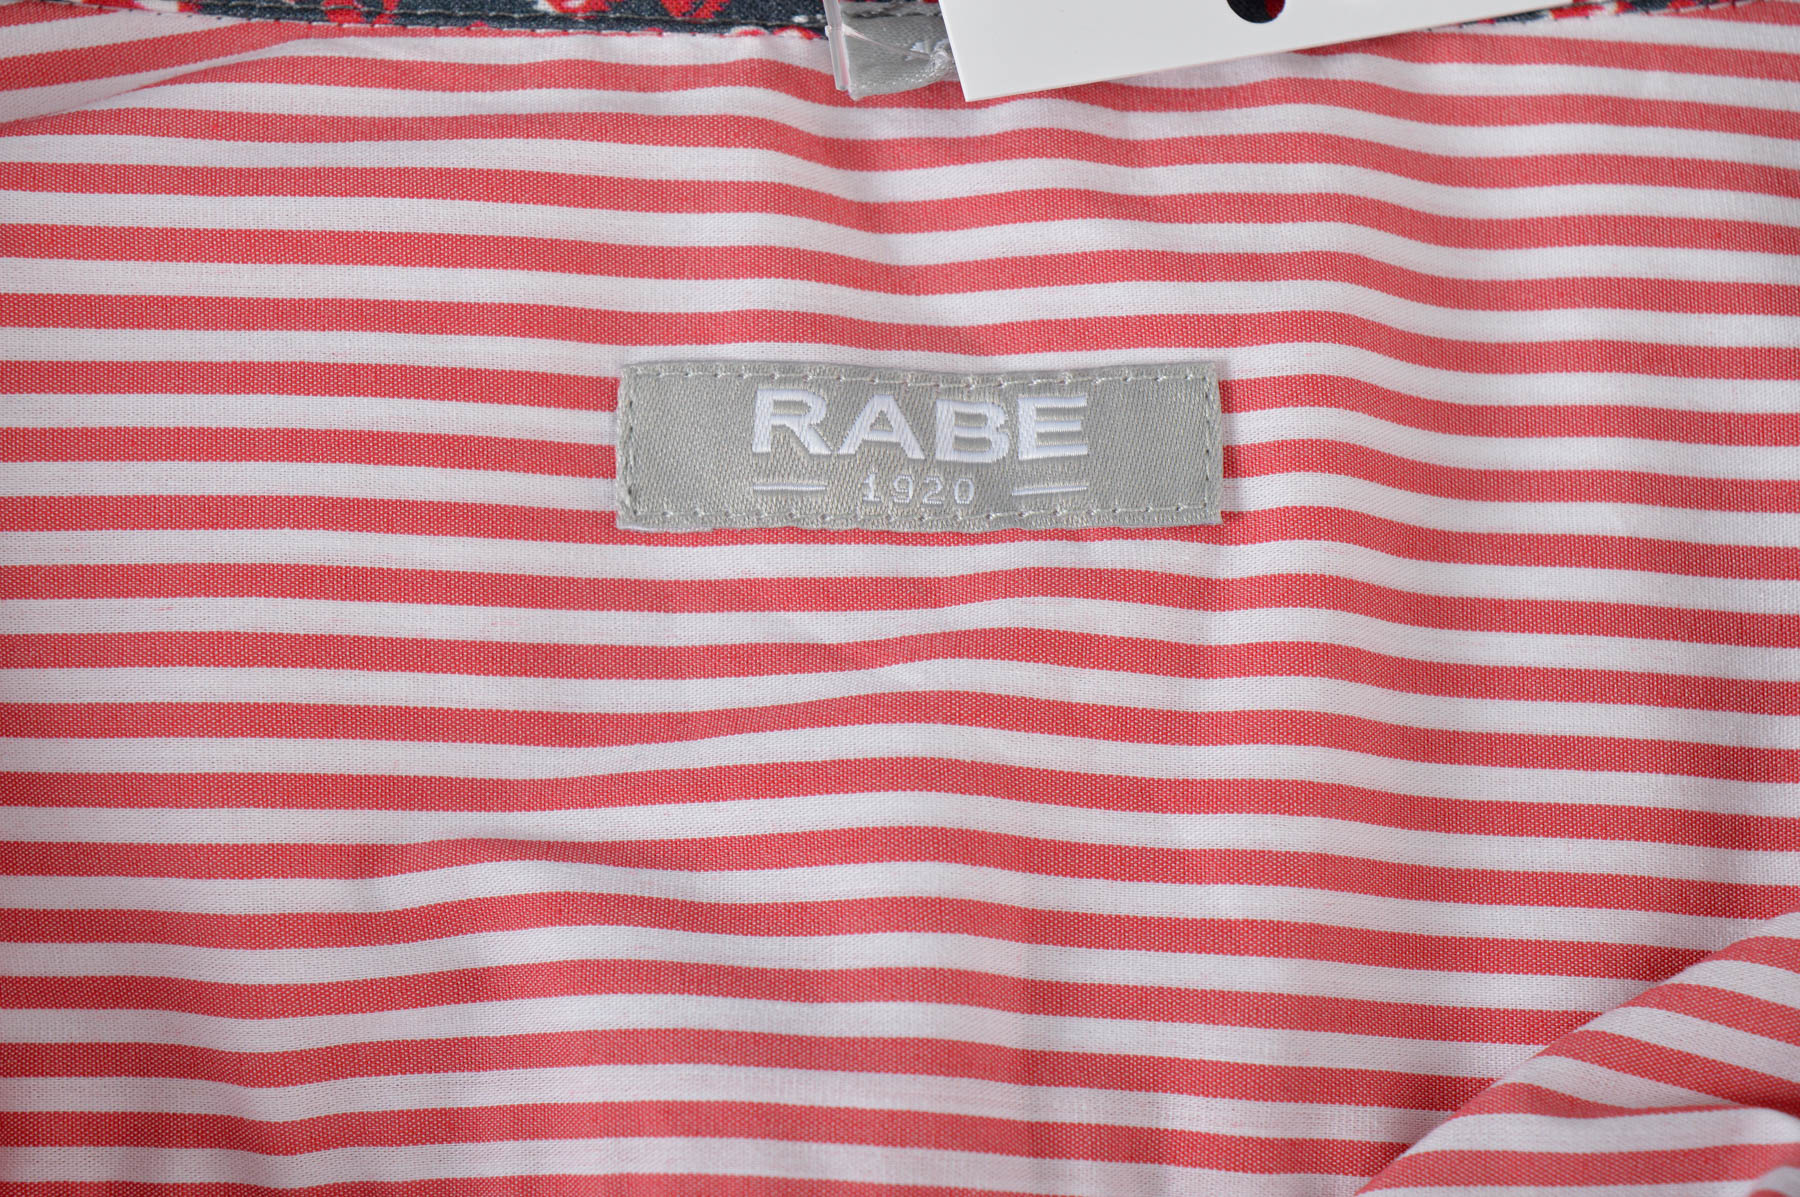 Women's shirt - Rabe - 2